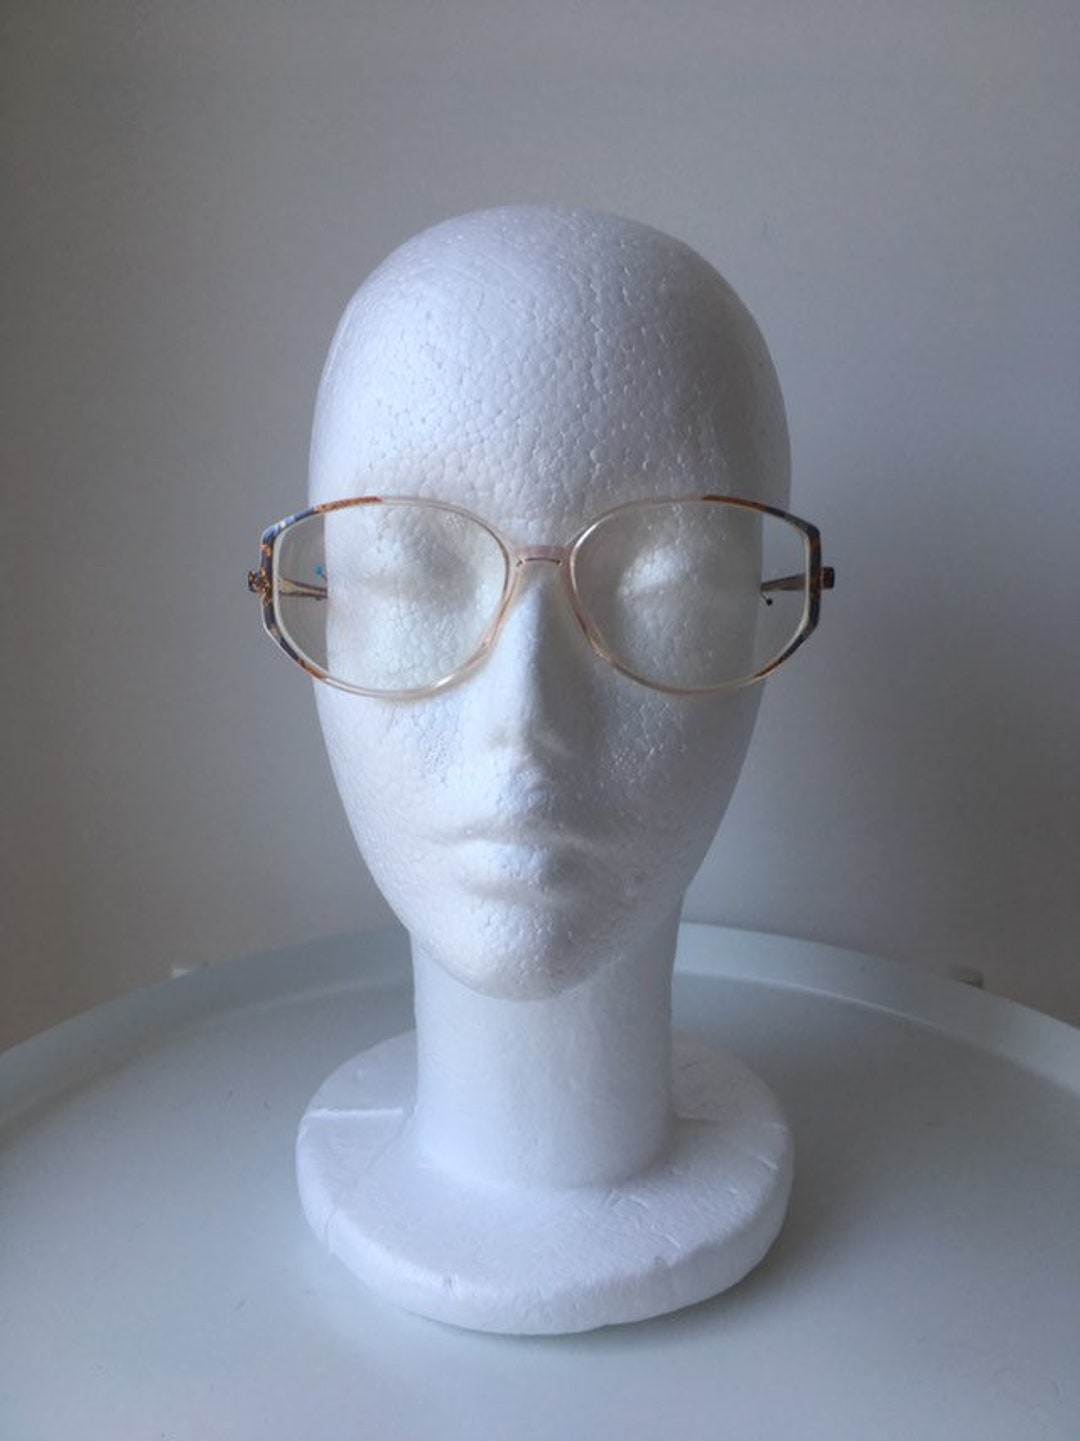 80's Silhouette Glasses SPX M 1803 C 2792 Eyeglasses - Etsy